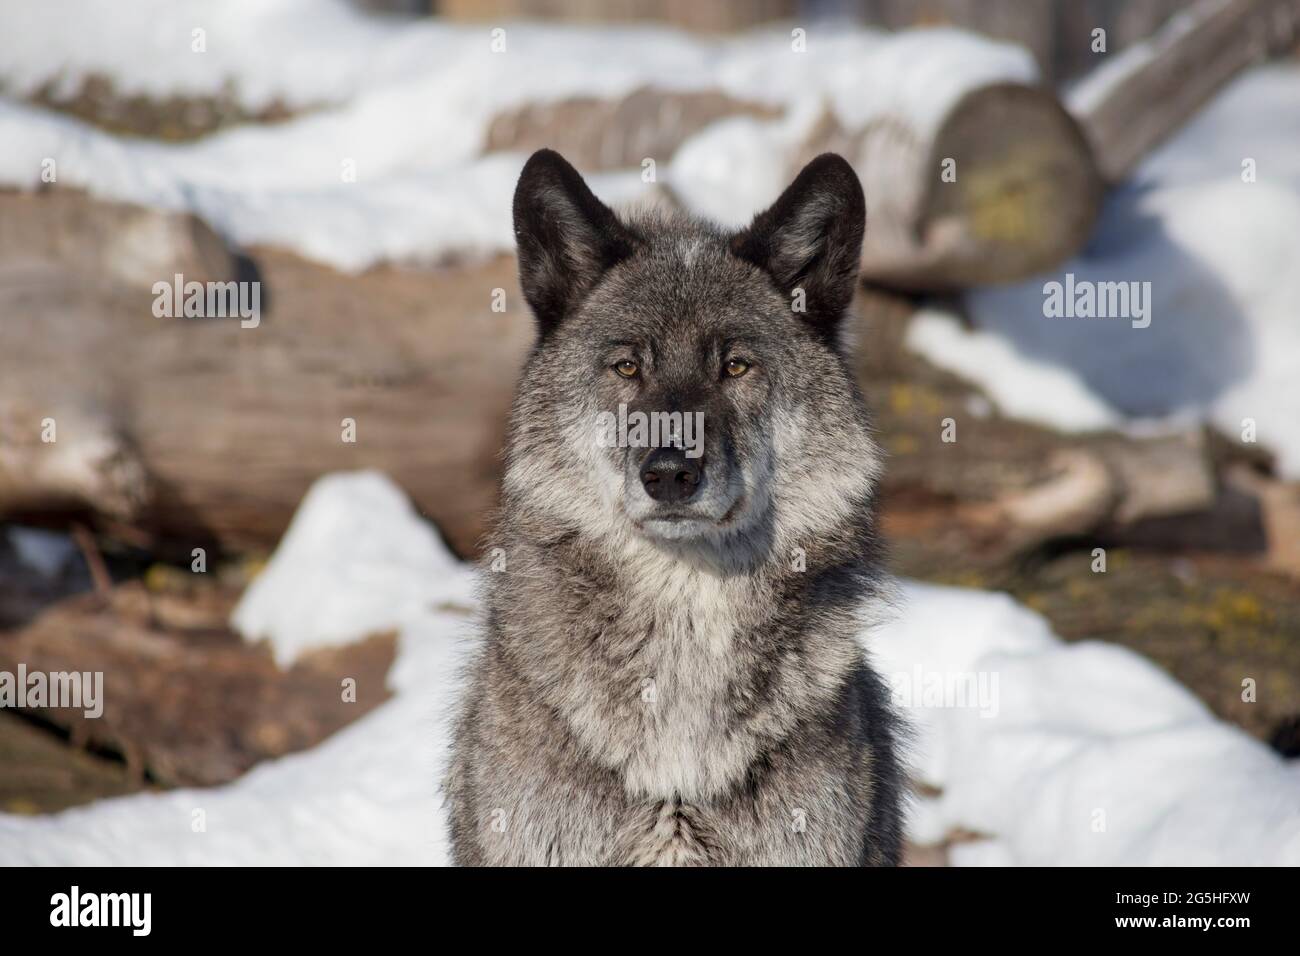 Porträt des niedlichen schwarzen kanadischen Wolfes steht auf einem weißen Schnee und schaut weg. Canis lupus pambasileus. Tiere in der Tierwelt. Stockfoto